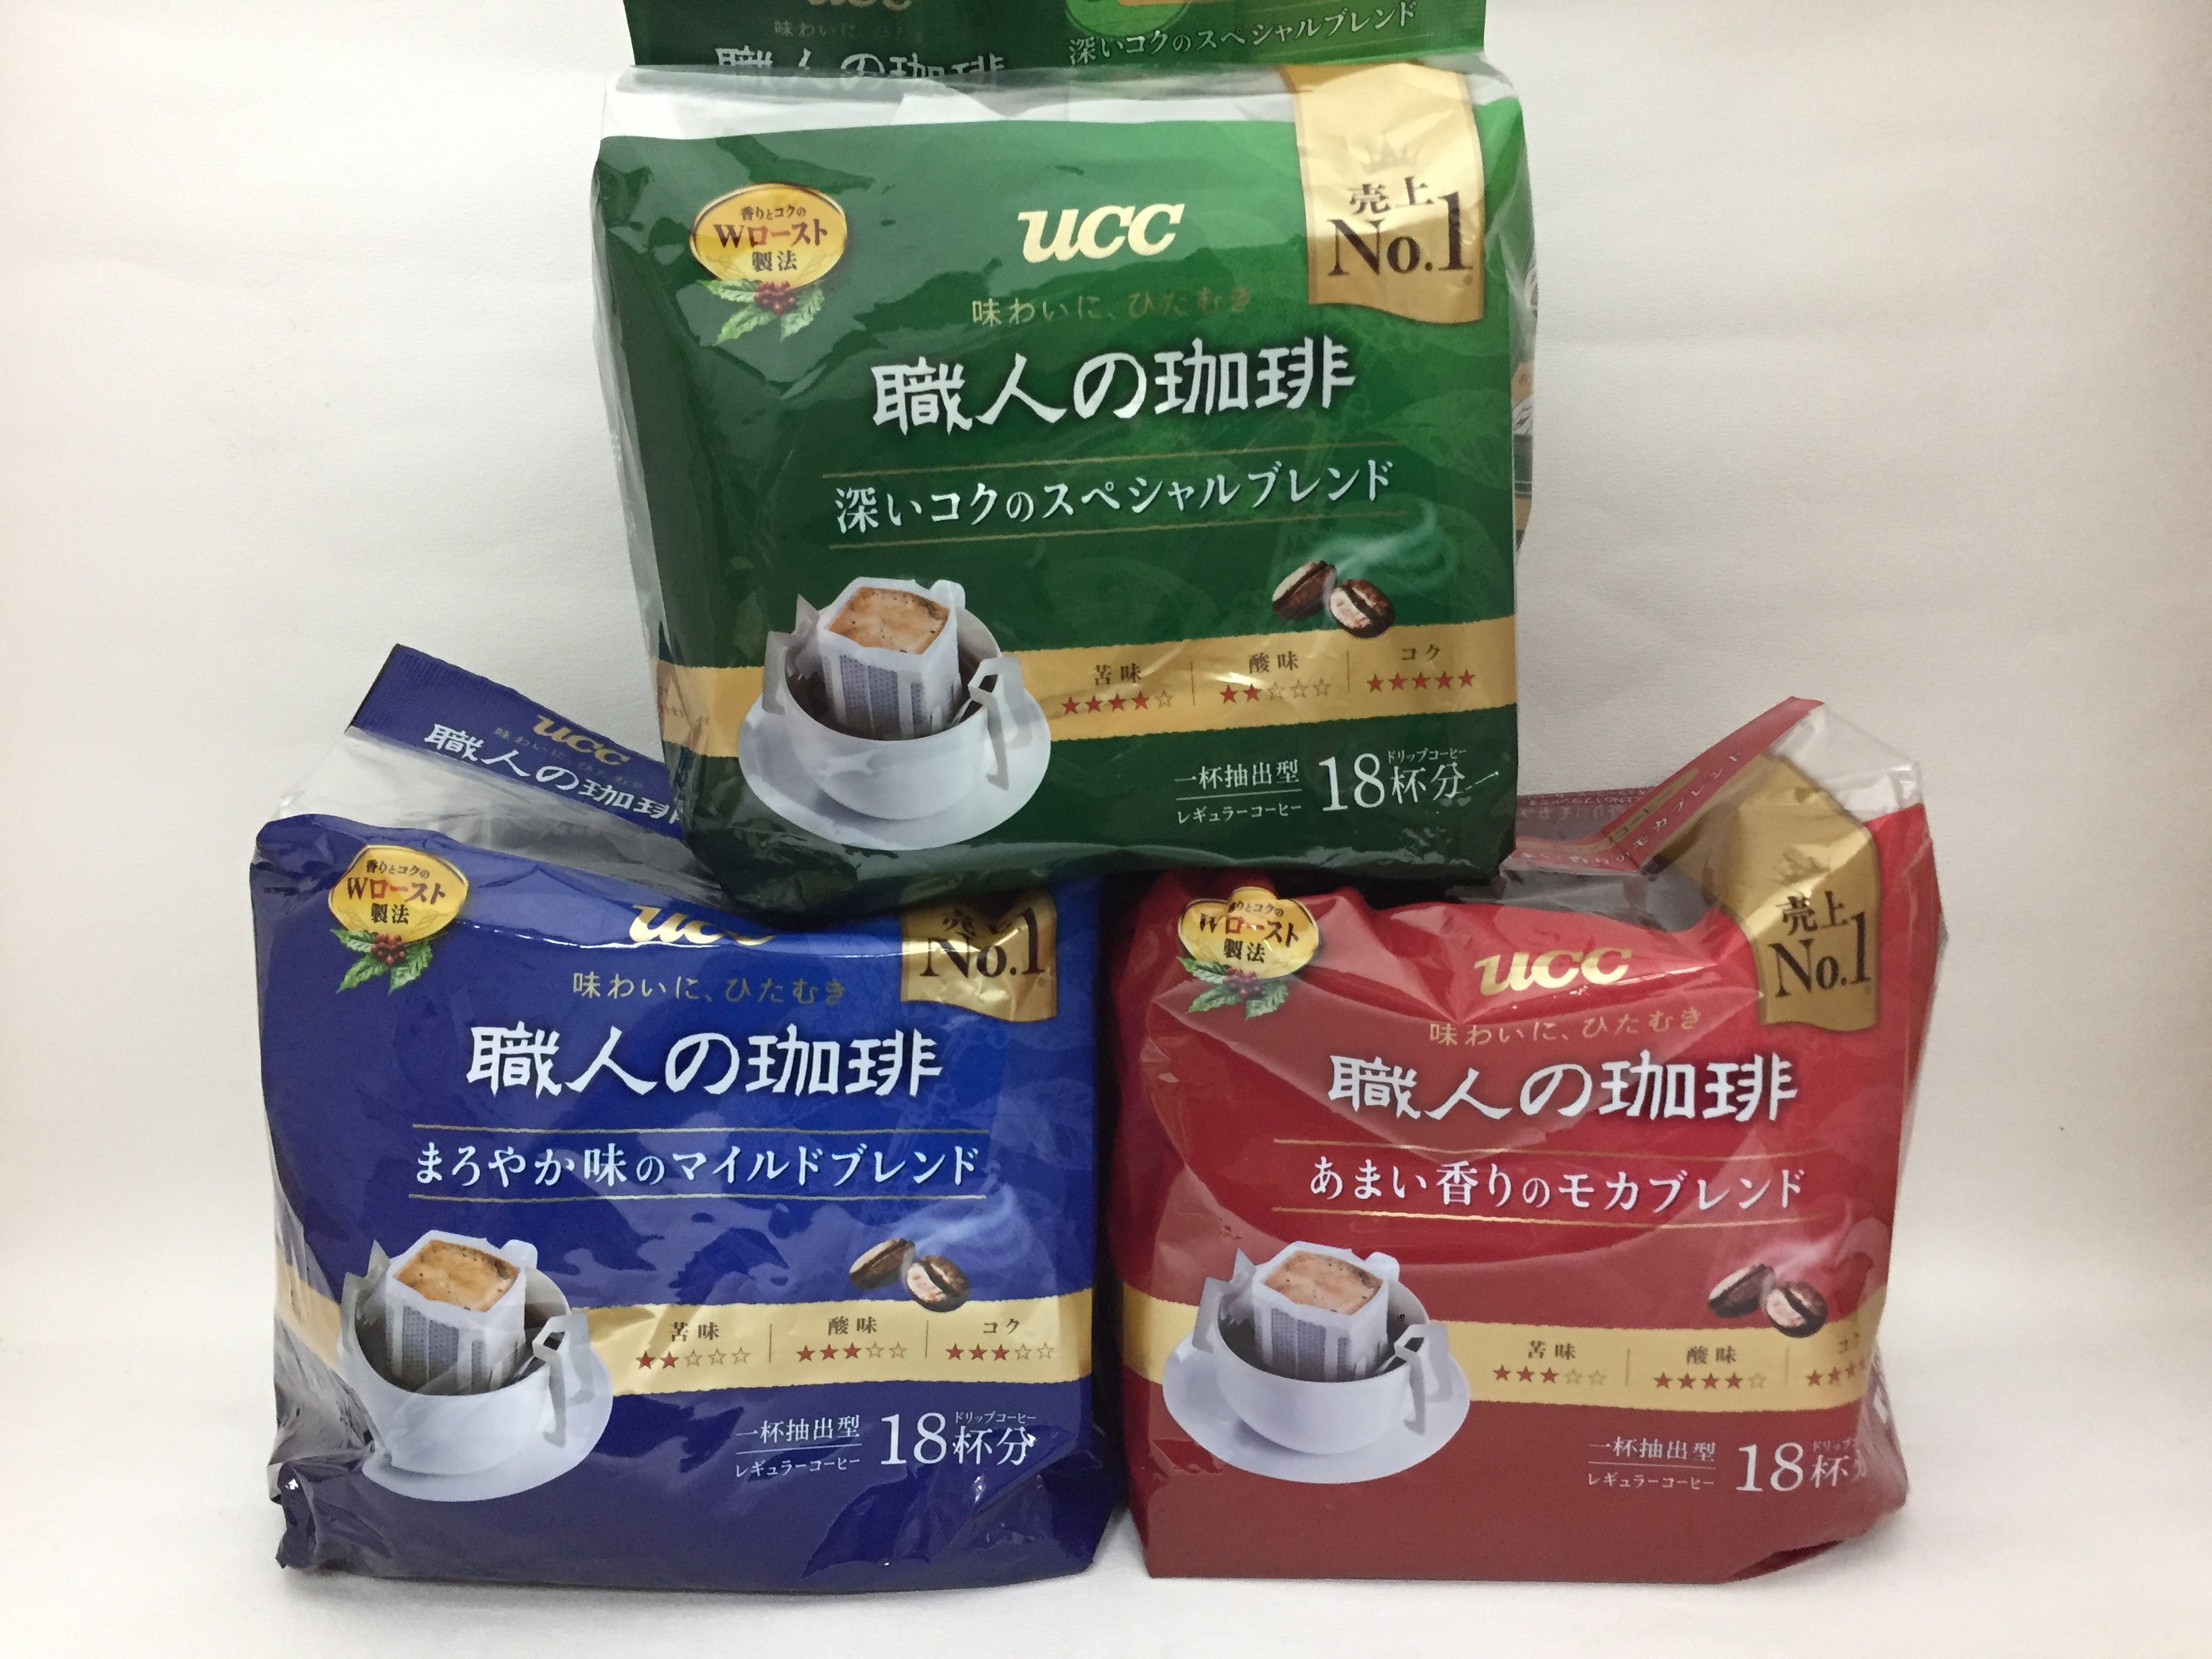 Ucc 職人的咖啡職人精選職人咖啡職人精選綜合濾掛咖啡濾掛咖啡濾掛日本製造 72杯份 超值精裝盒 露天拍賣